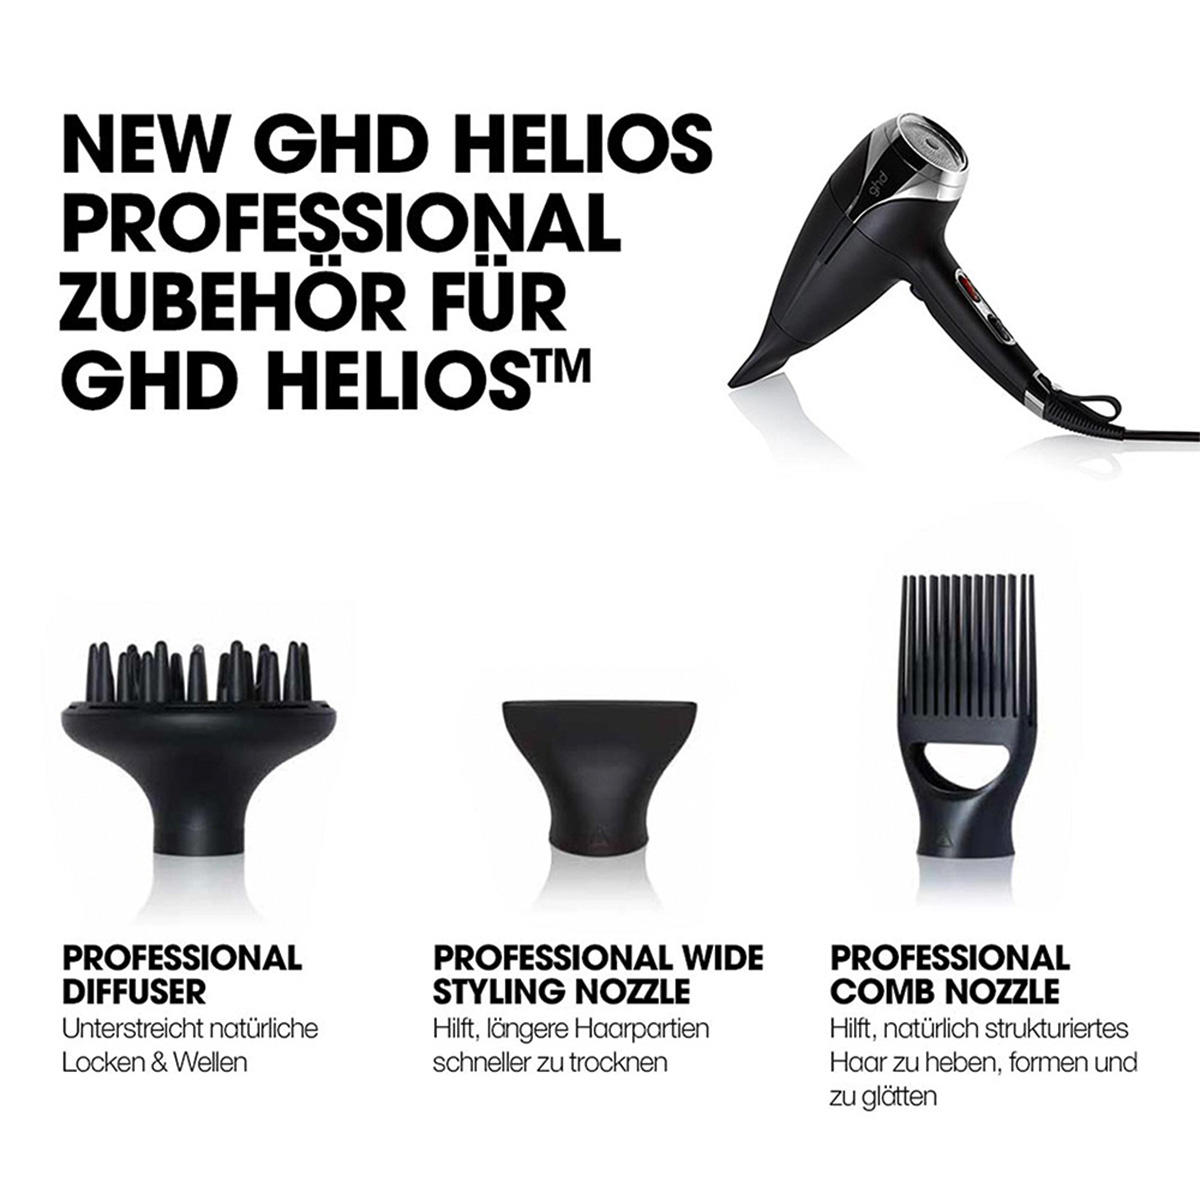 ghd professional comb nozzle  - 3